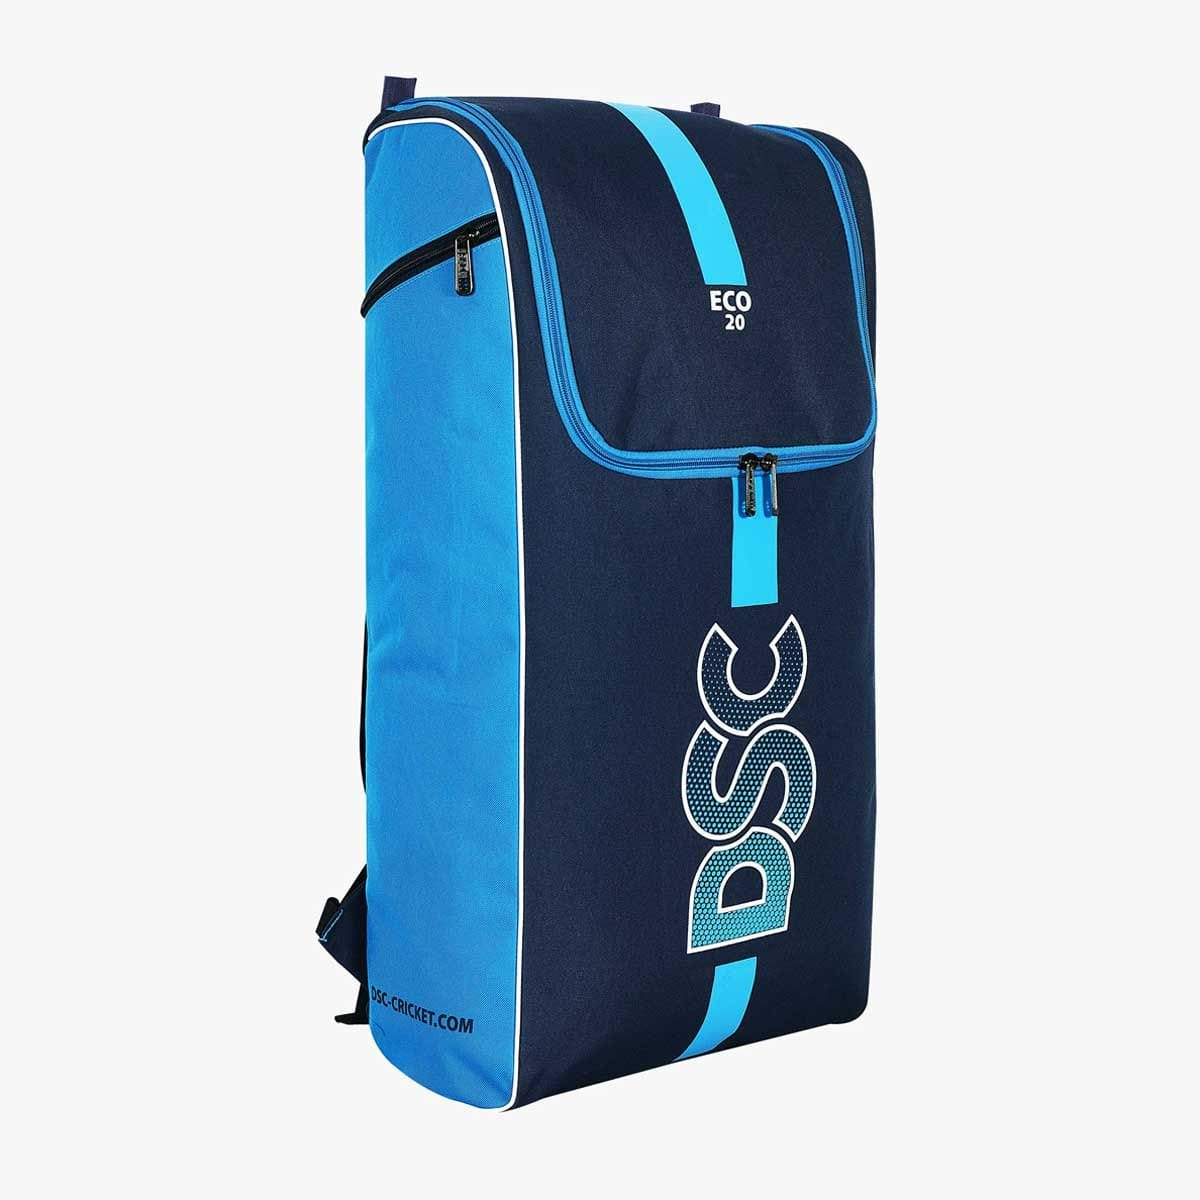 Adidas Cricket Bags DSC Eco 20 Cricket Bag